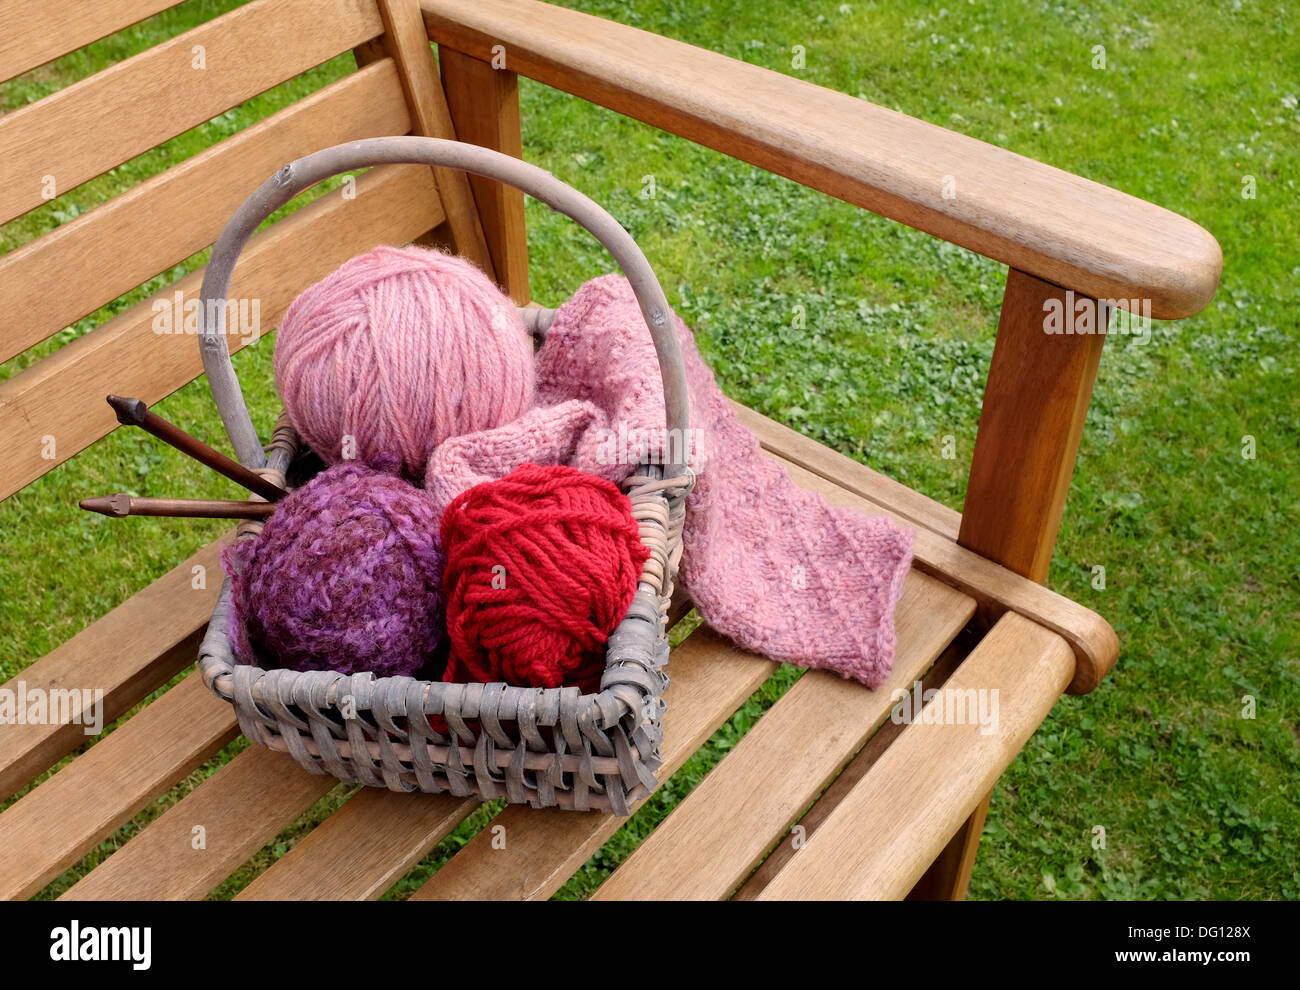 Handwerk-Korb mit gemusterten stricken, Kugeln aus Wolle und Holz Nadeln  auf eine Gartenbank Stockfotografie - Alamy